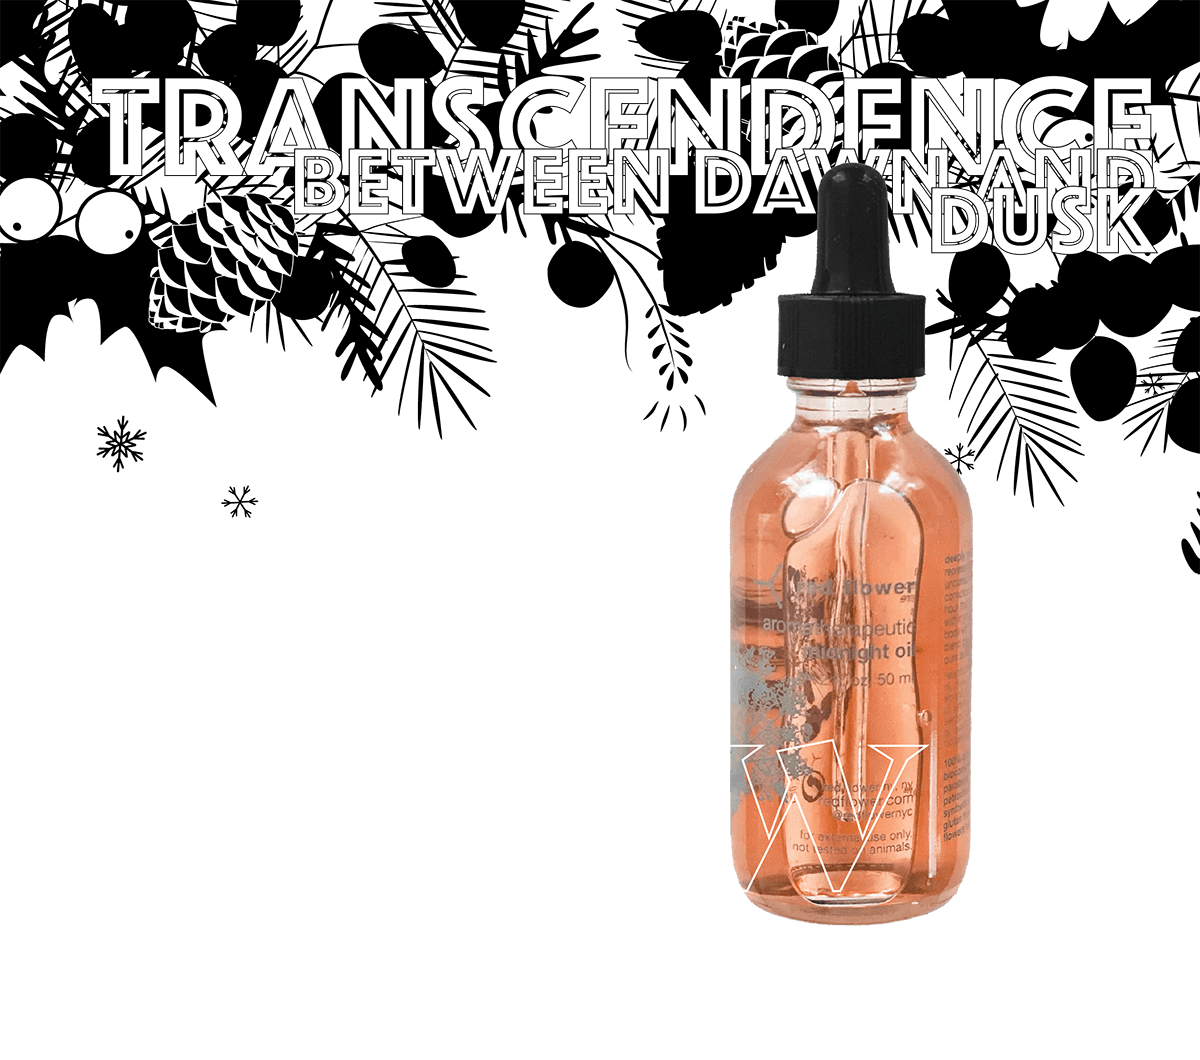 transcendence_between_dawn_and_dusk-header-04FM-27